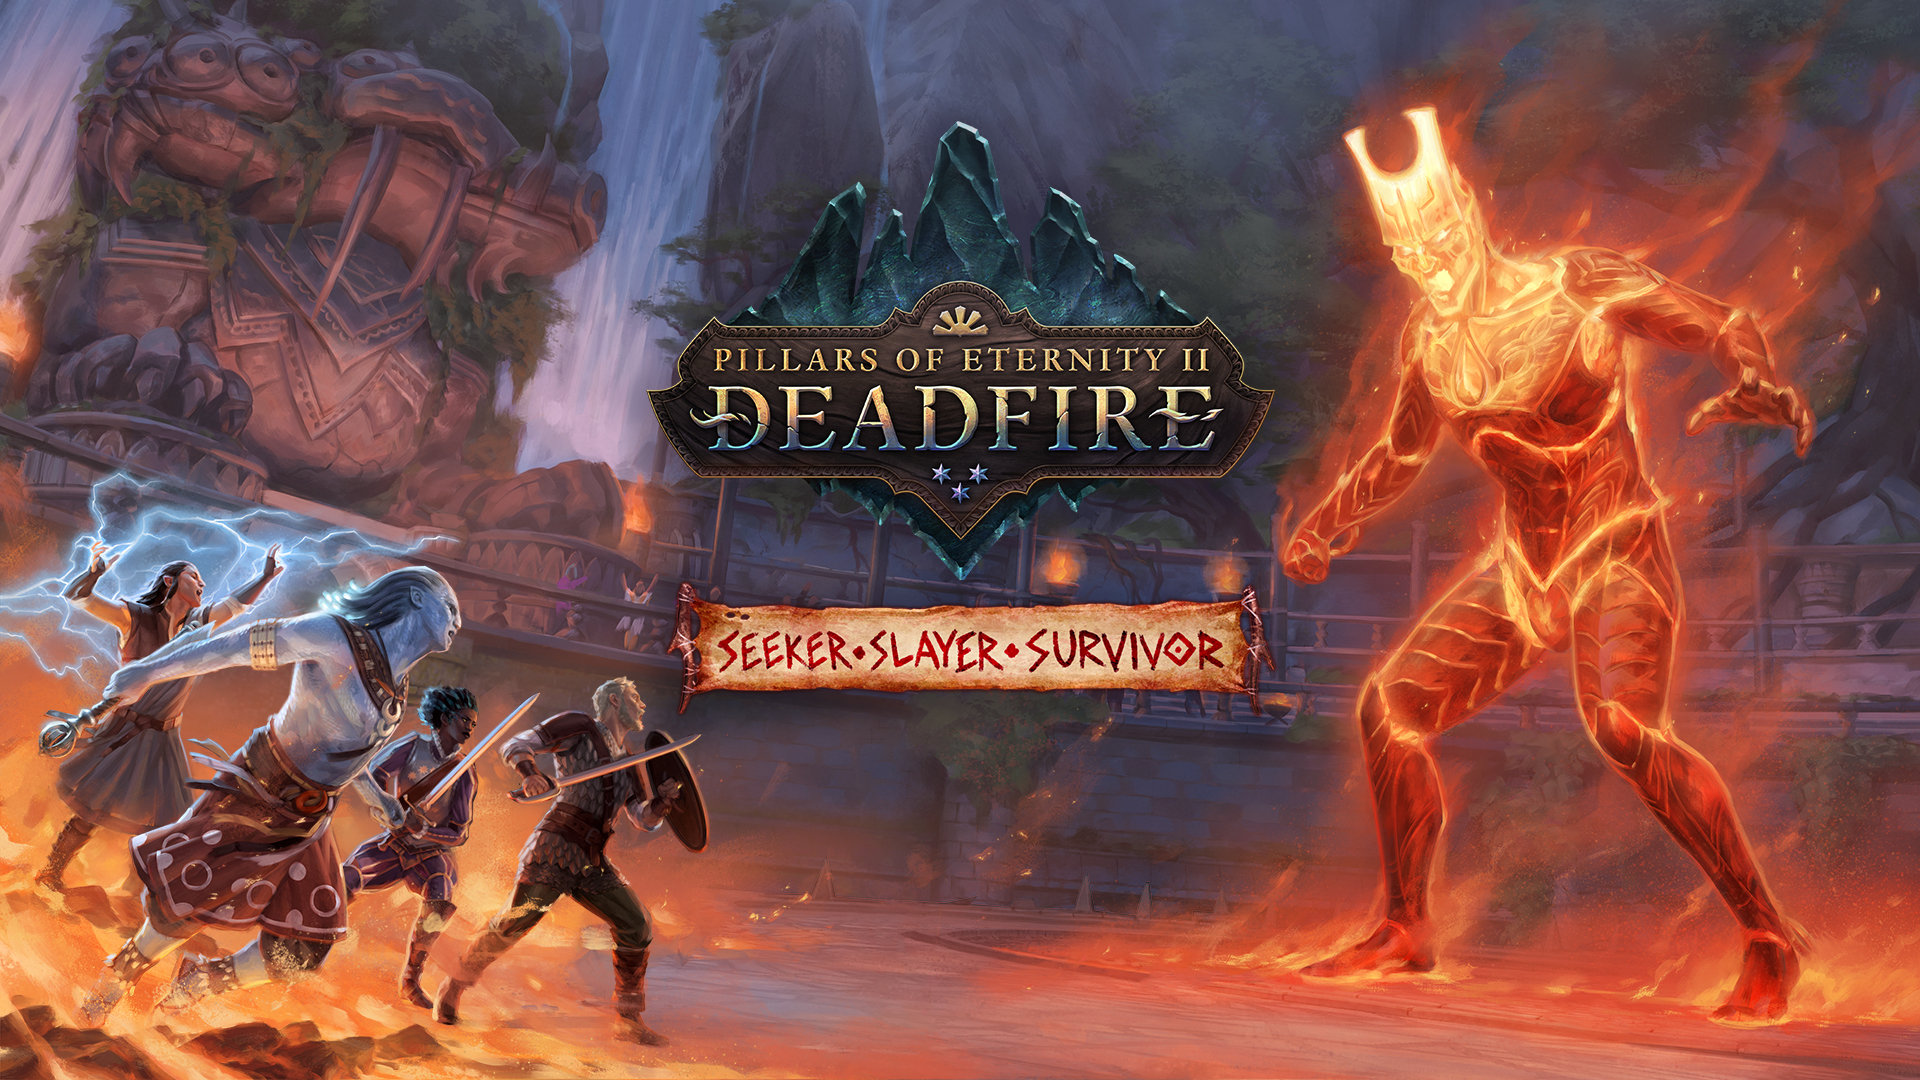 Pillars of Eternity II: Deadfire - Update 3.0 and Seeker, Slayer